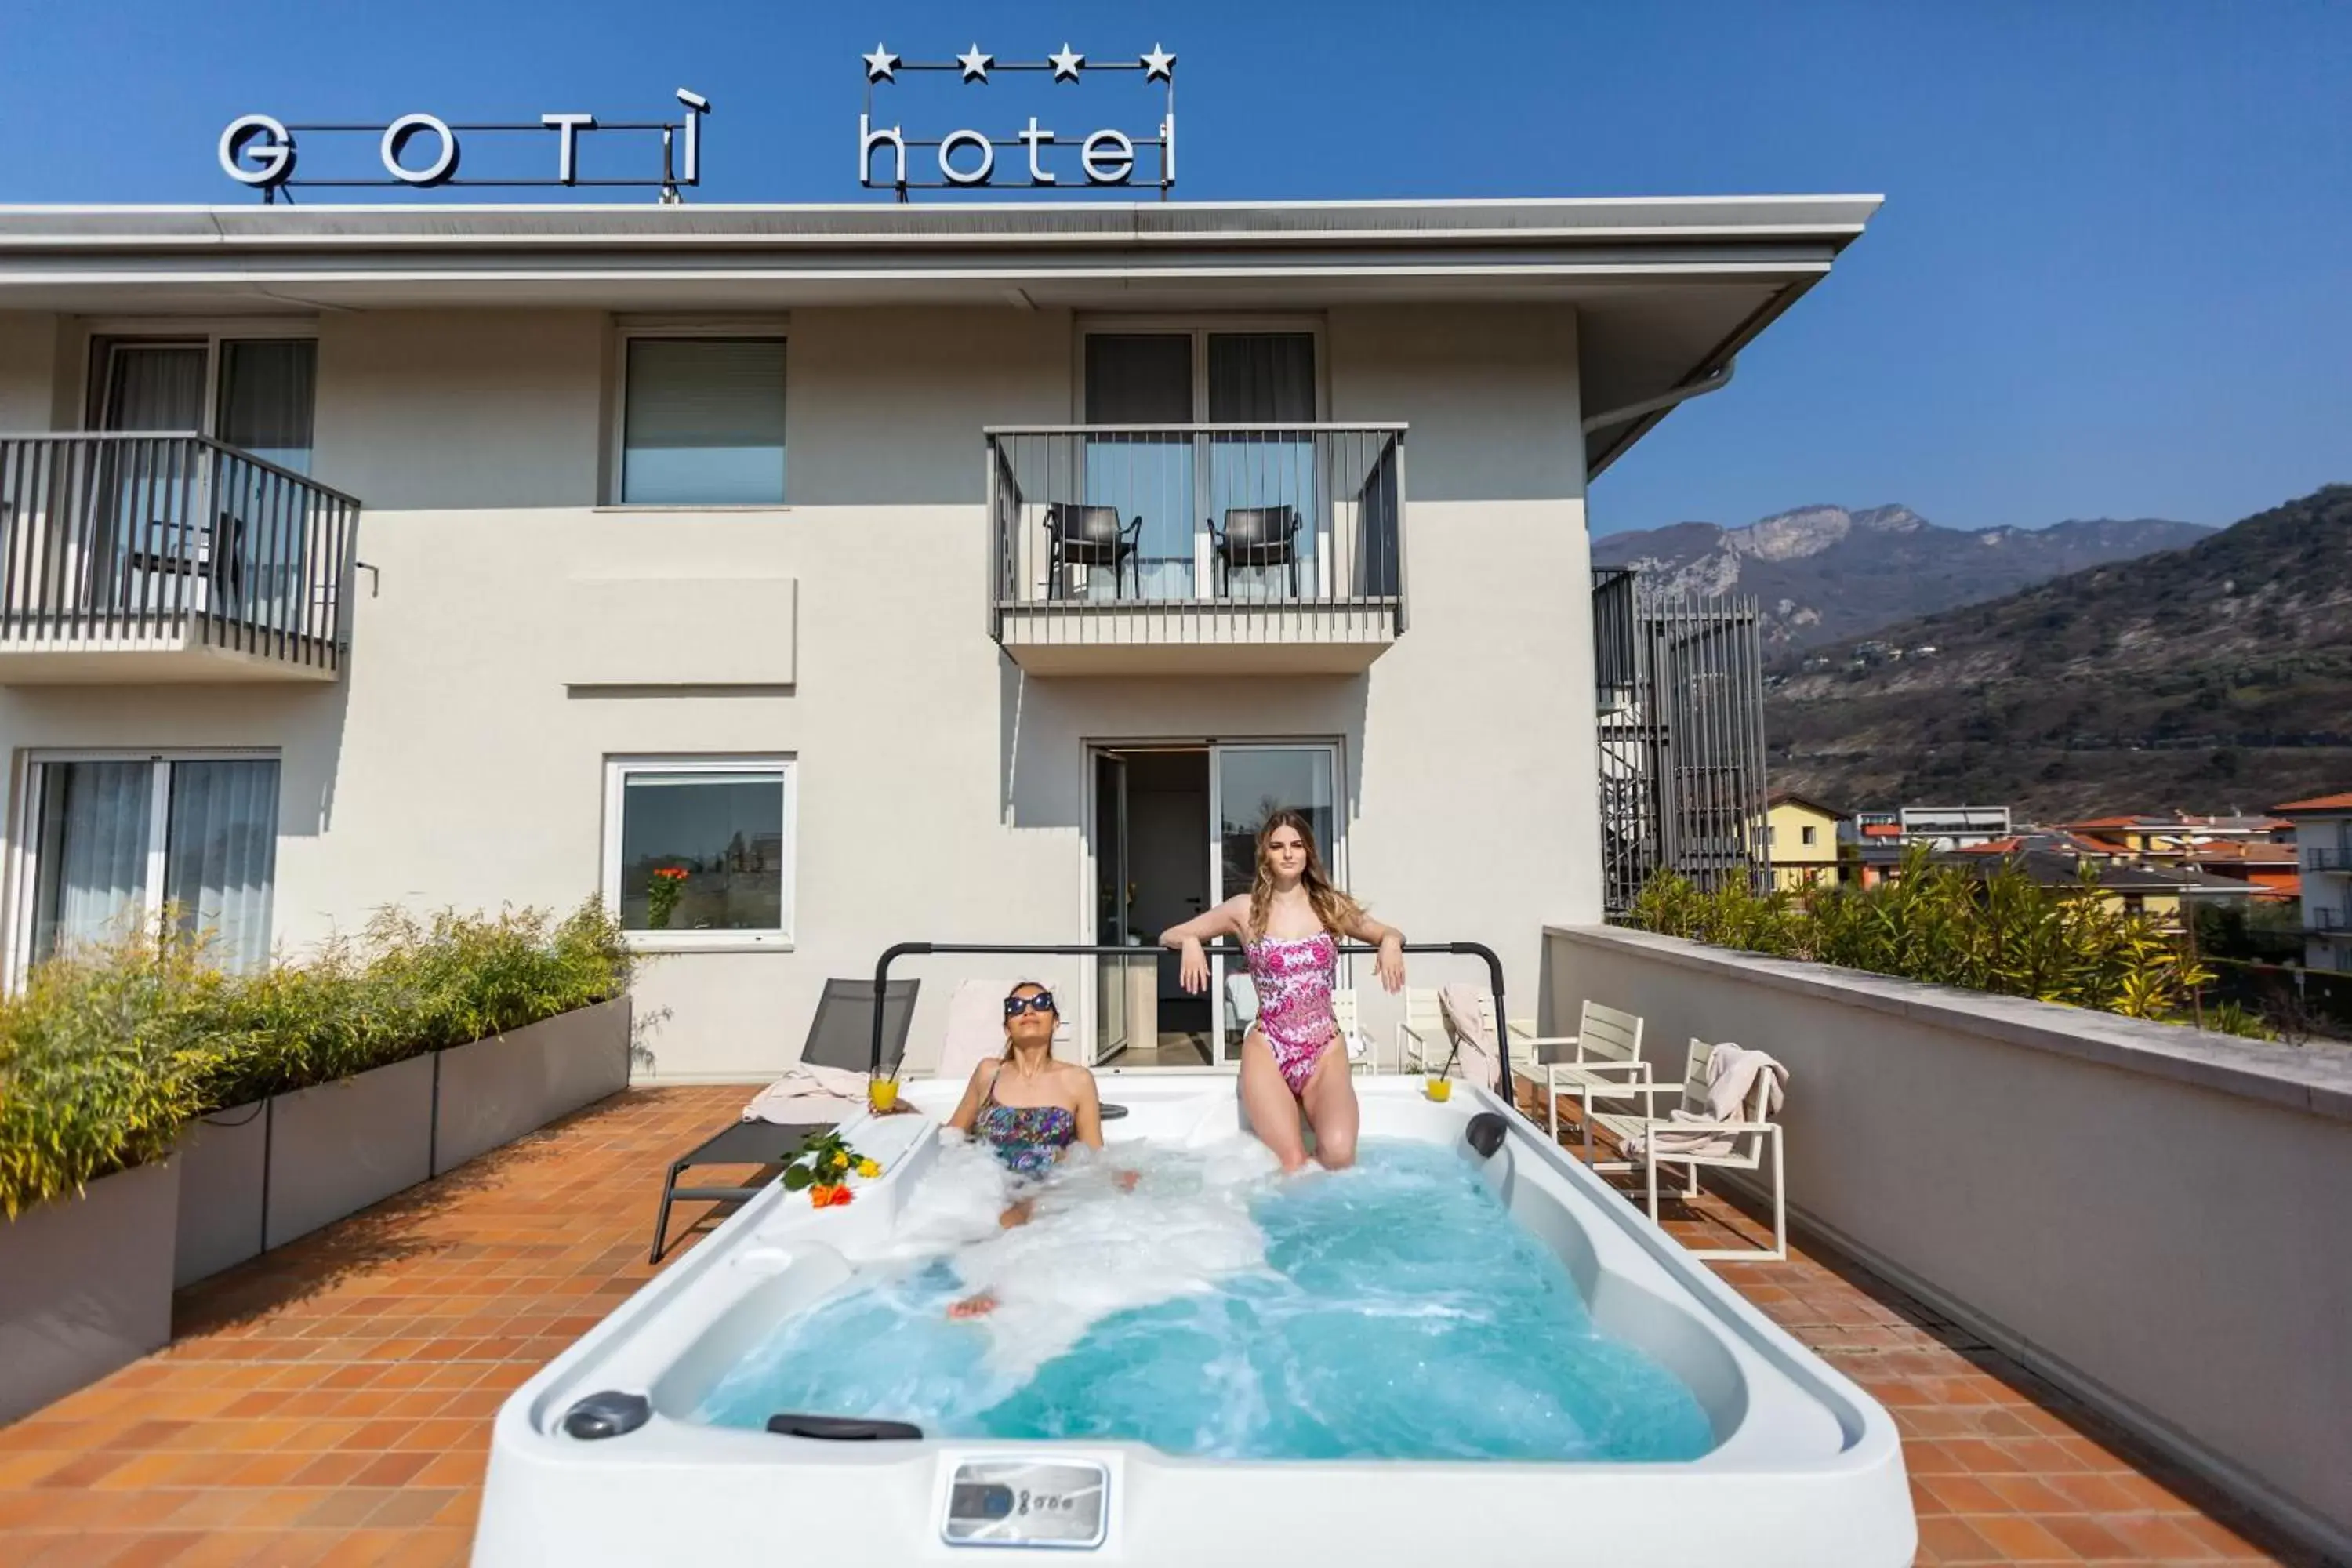 Hot Tub in GoTì Hotel